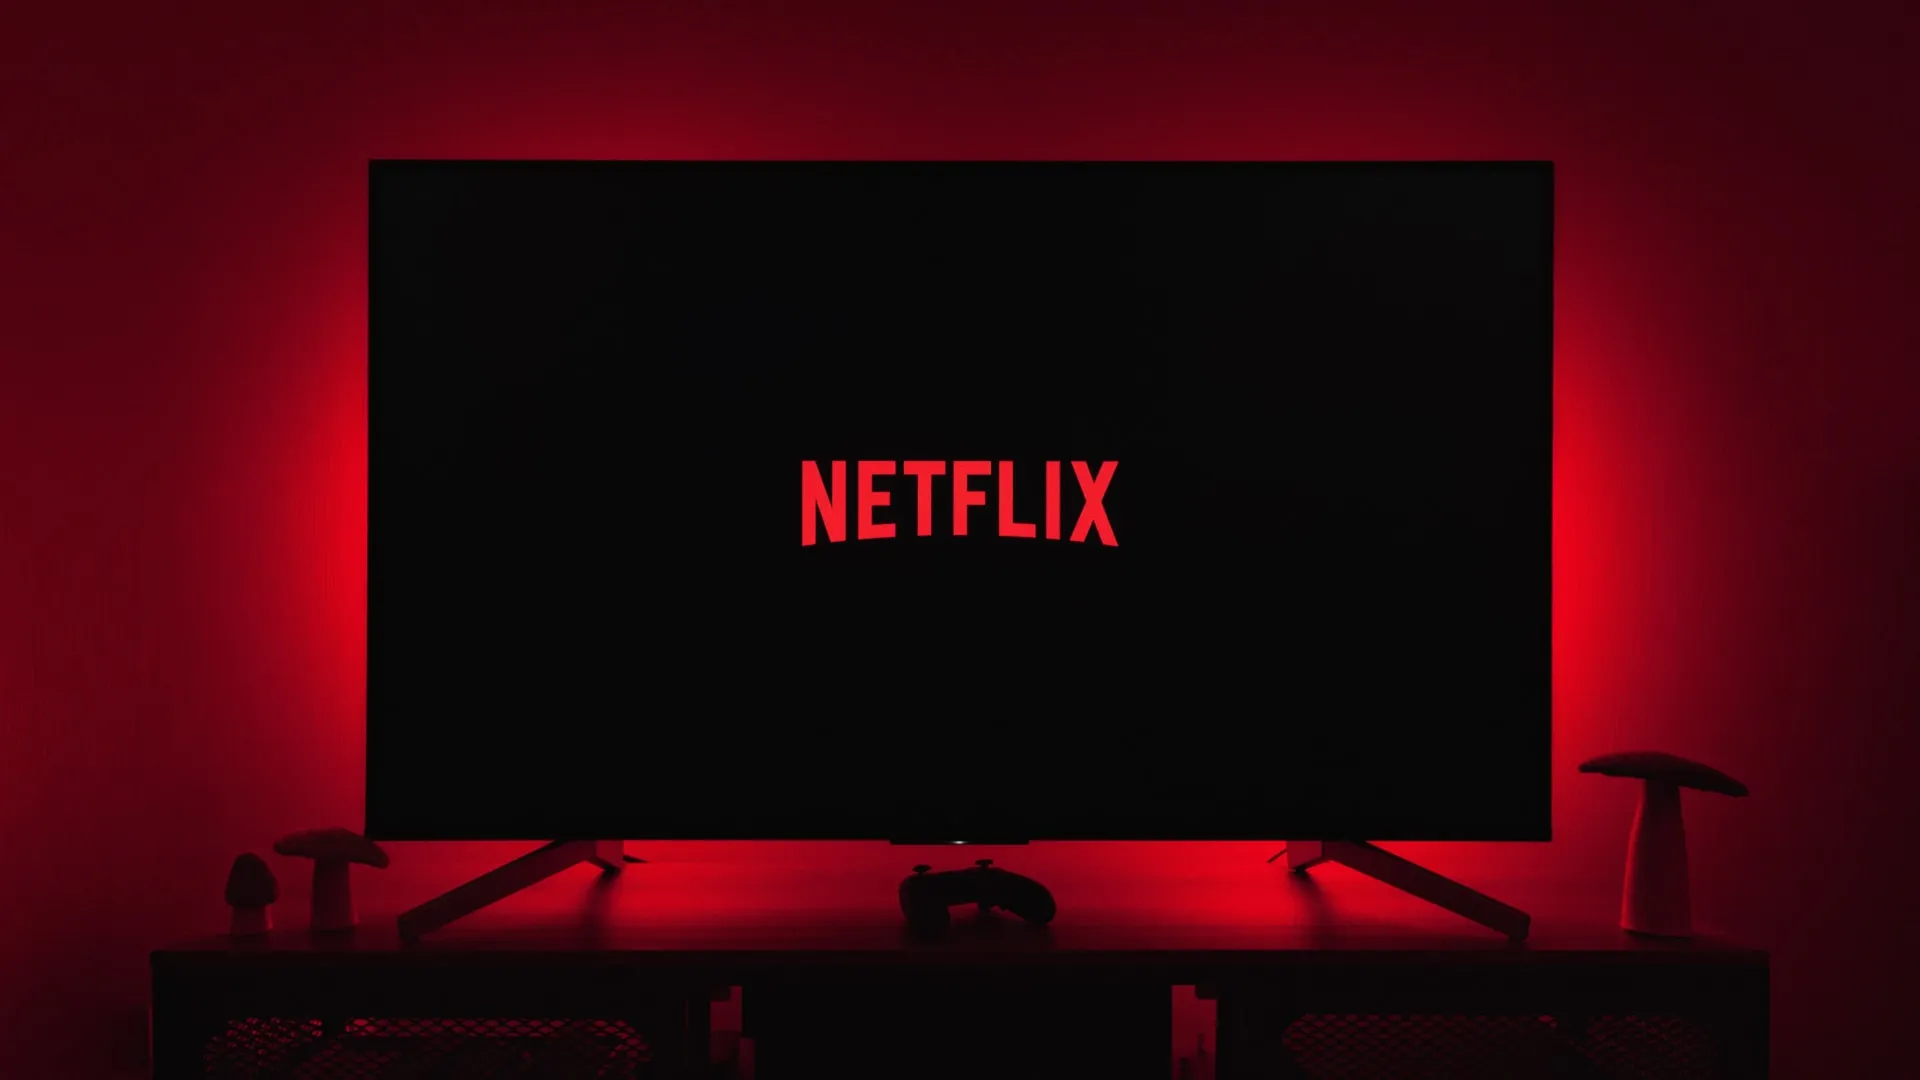 Logotipo da Netflix contra um fundo preto, exibido em um aparelho de TV